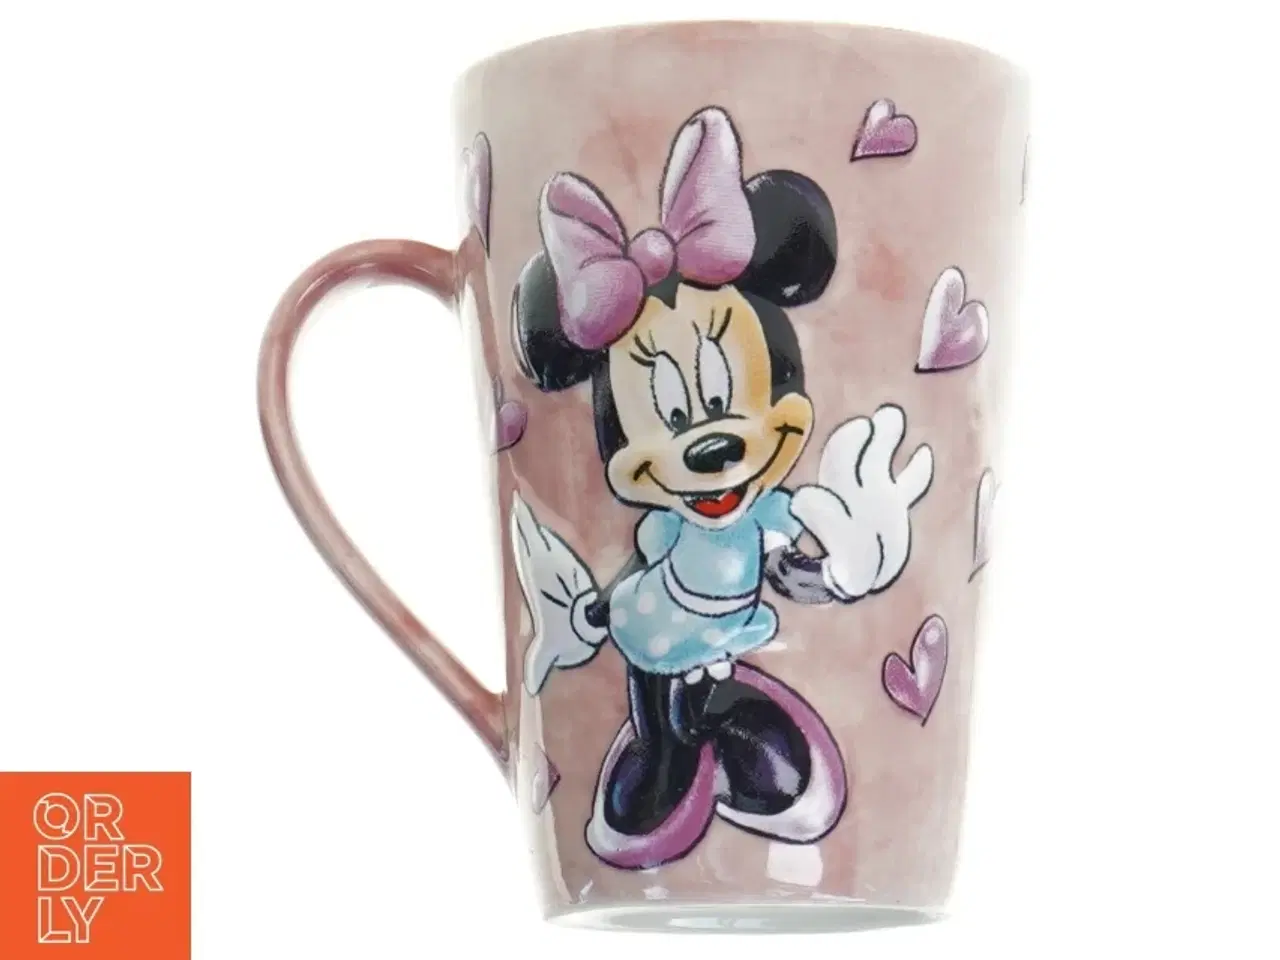 Billede 2 - Krus med Minnie Mouse fra Disney (str. 13 m)